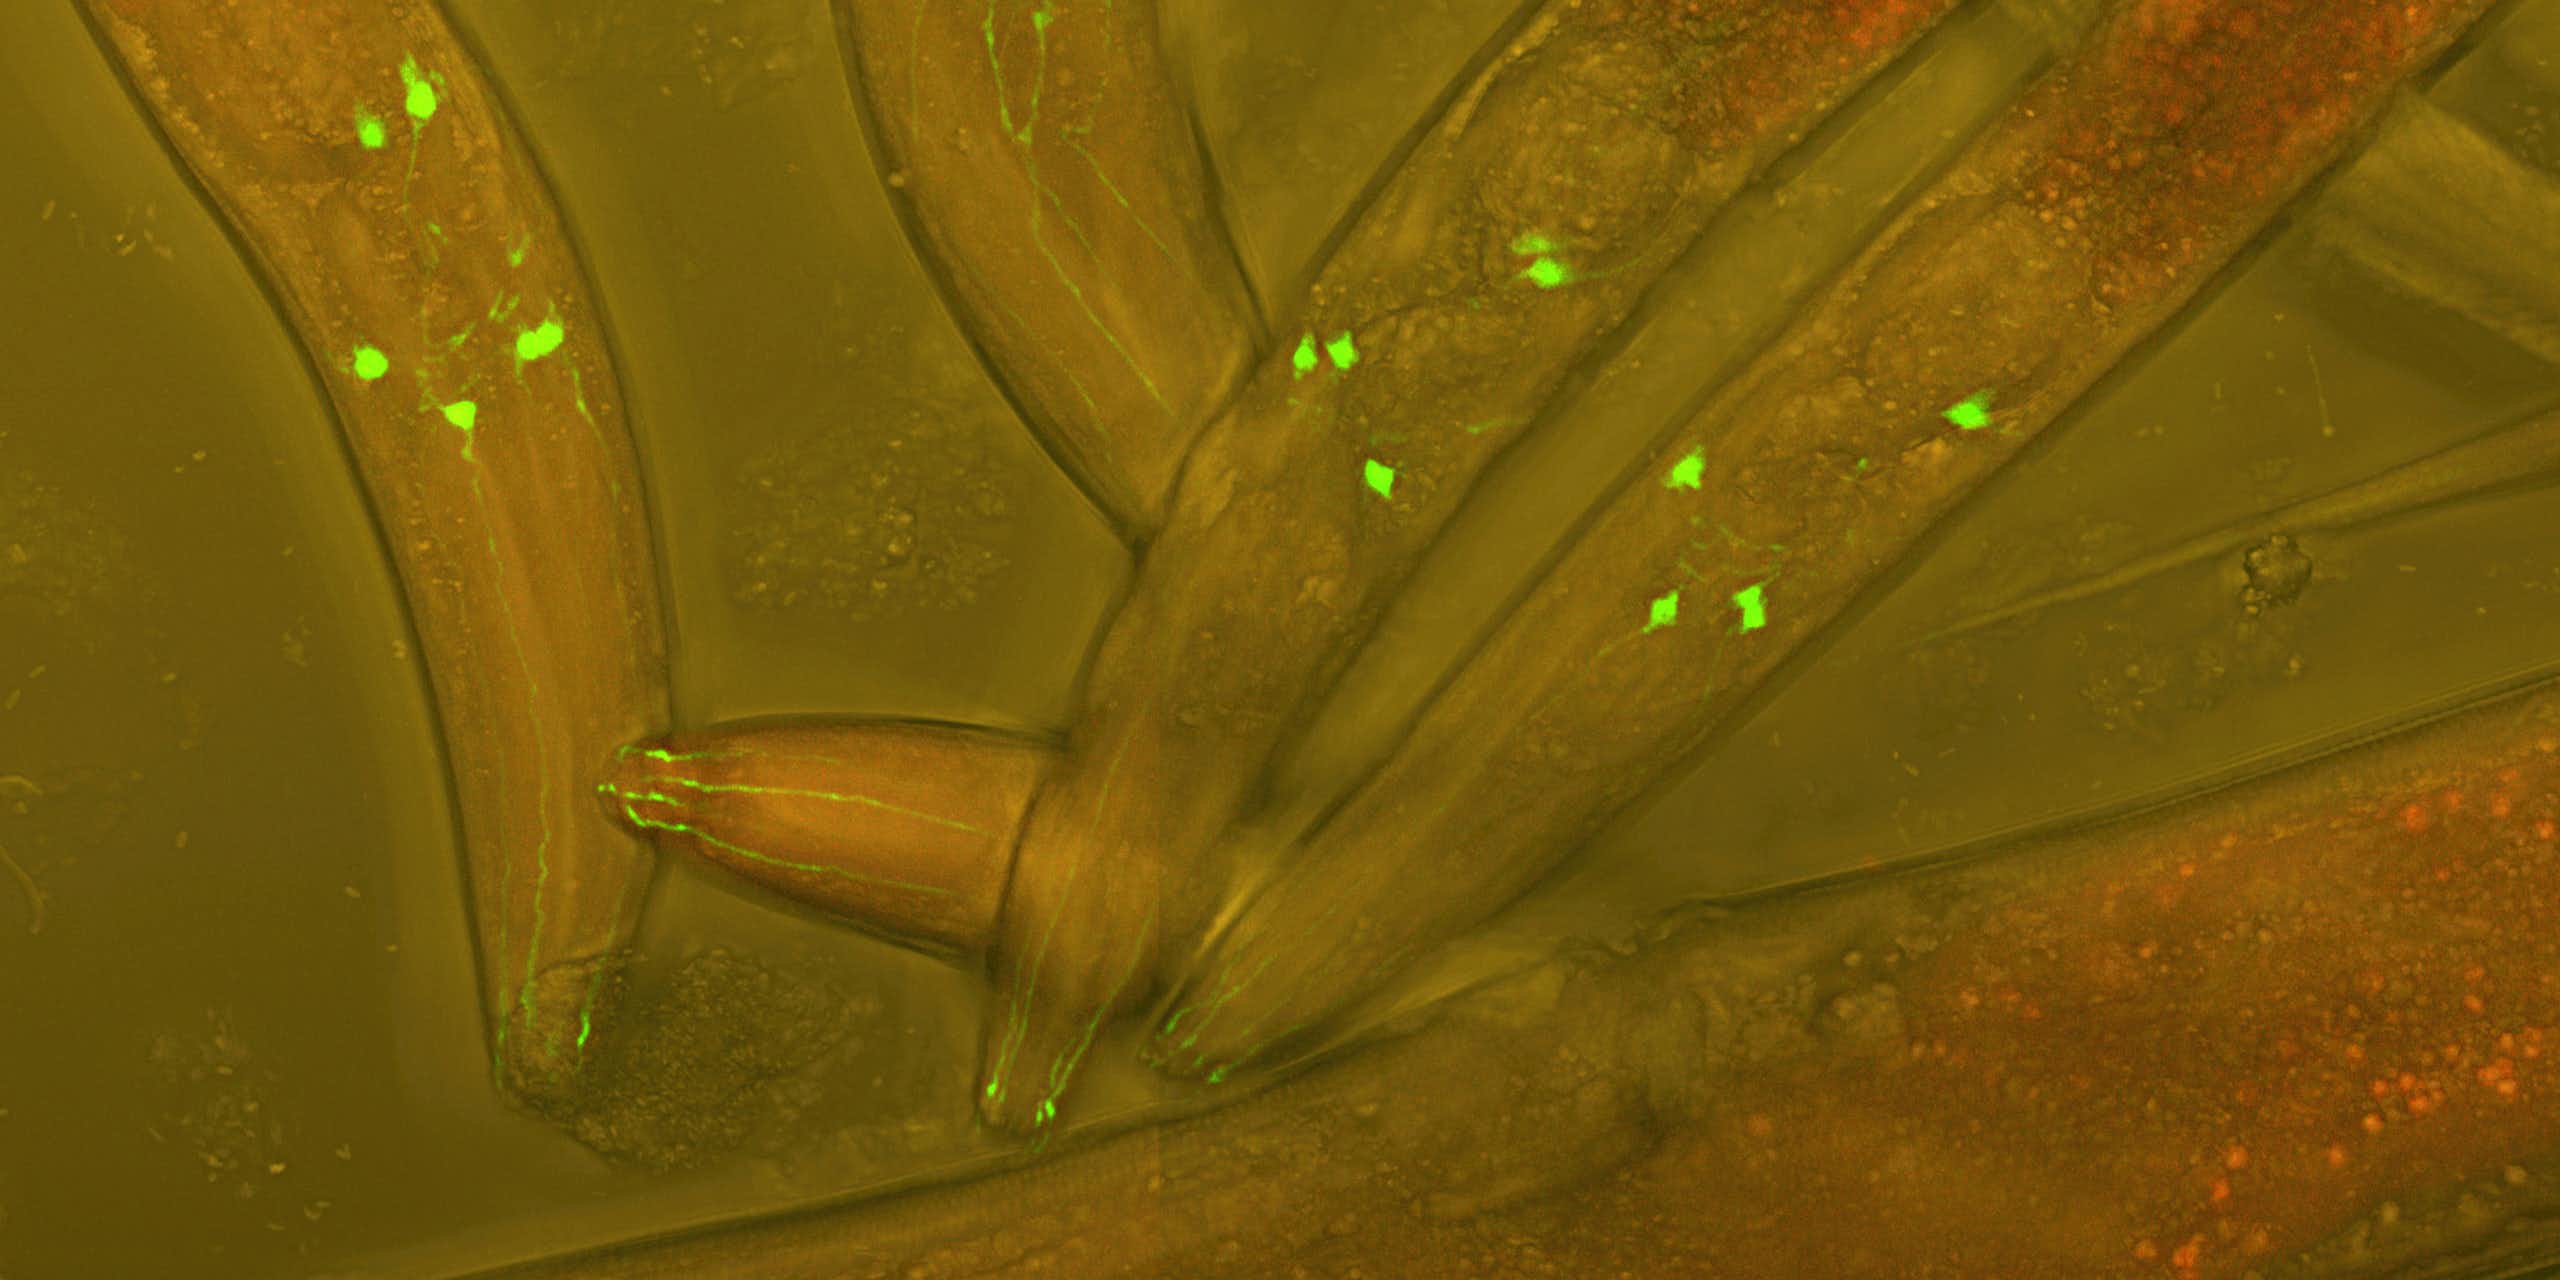 Vers Caenorhabditis elegans vivants, dont les neurones sont rendus fluorescents afin de visualiser le développement neuronal dans un ver vivant.